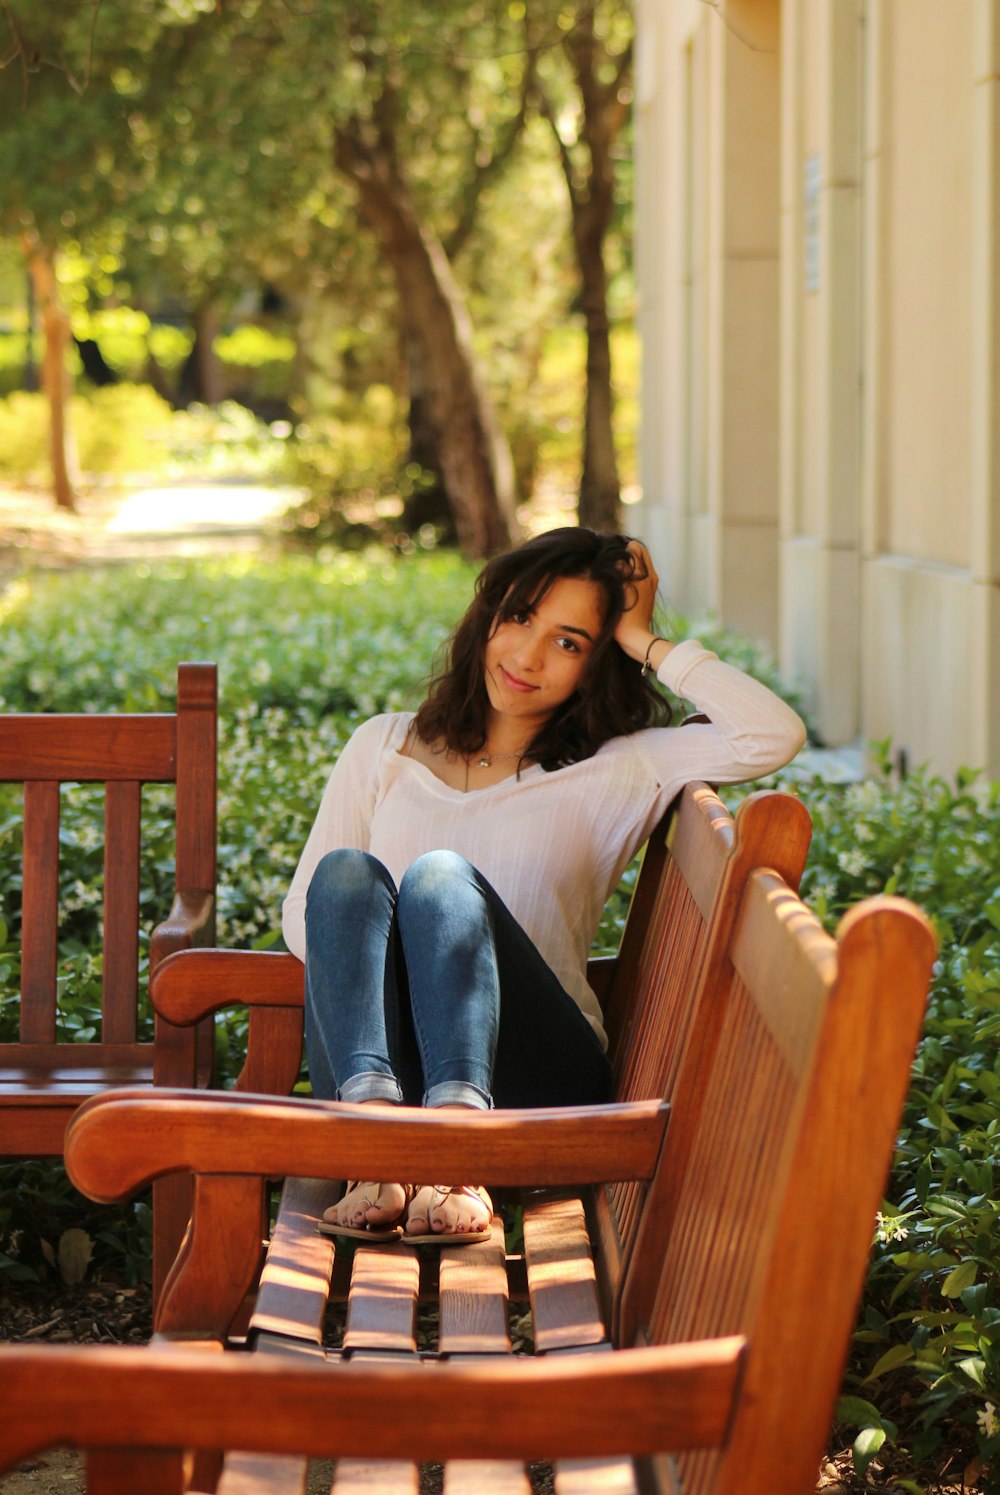 ベンチに座る女性の浅い焦点写真